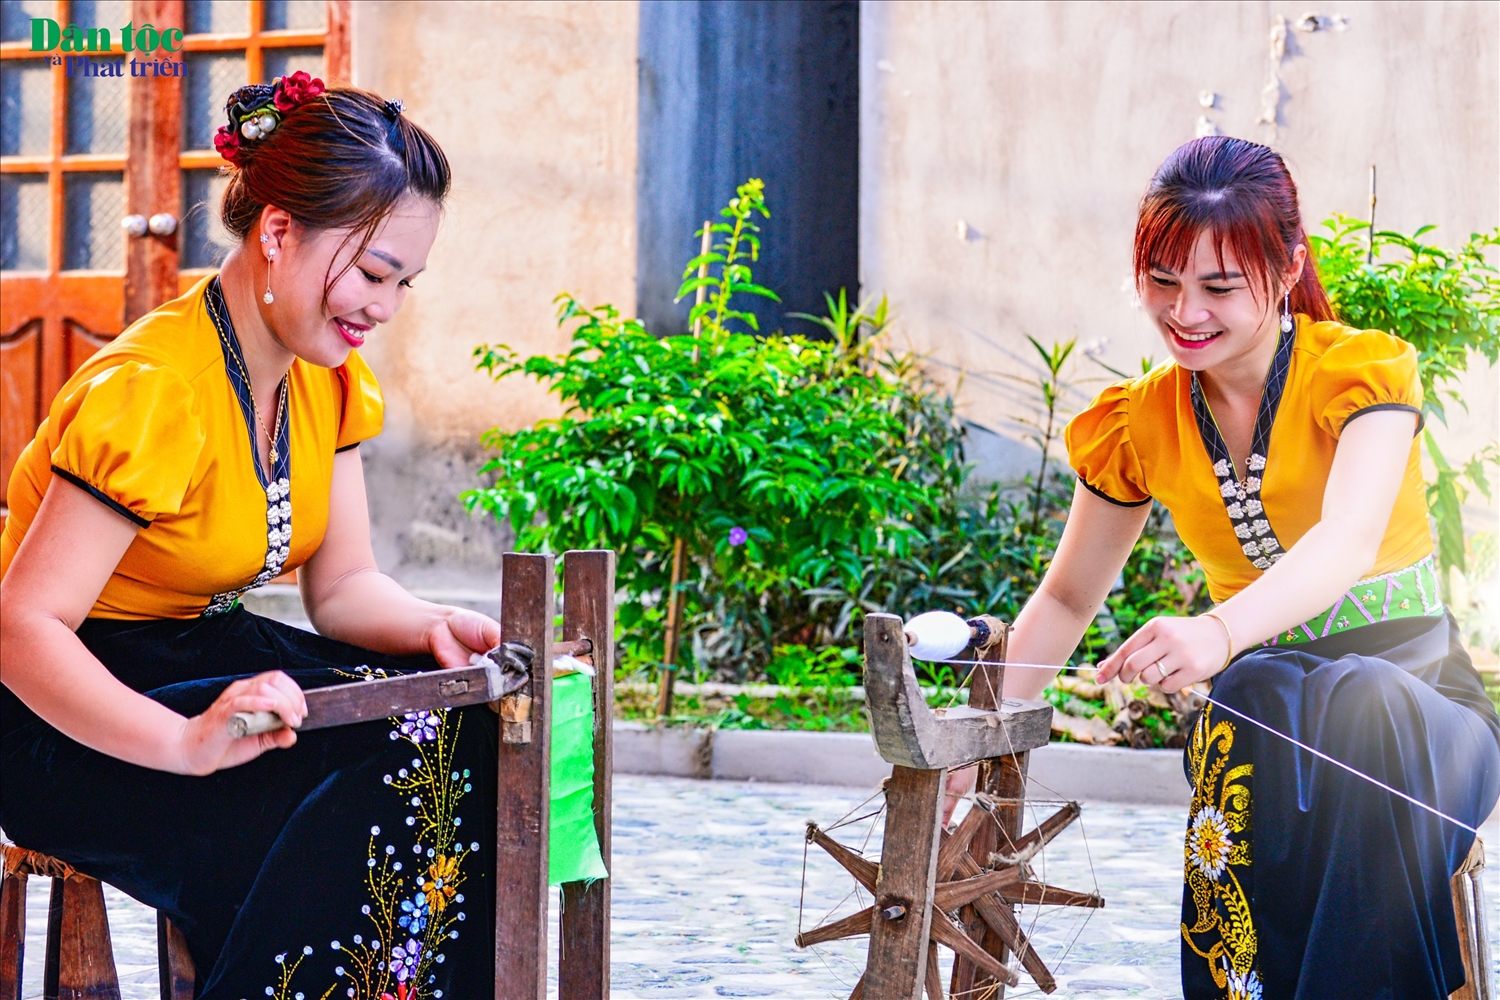 Phụ nữ Thái (Lai Châu) không chỉ đẹp ở gương mặt, vóc dáng, trang phục truyền thống mà nét đẹp ấy còn còn toát lên trong sinh hoạt, lao động, sản xuất…